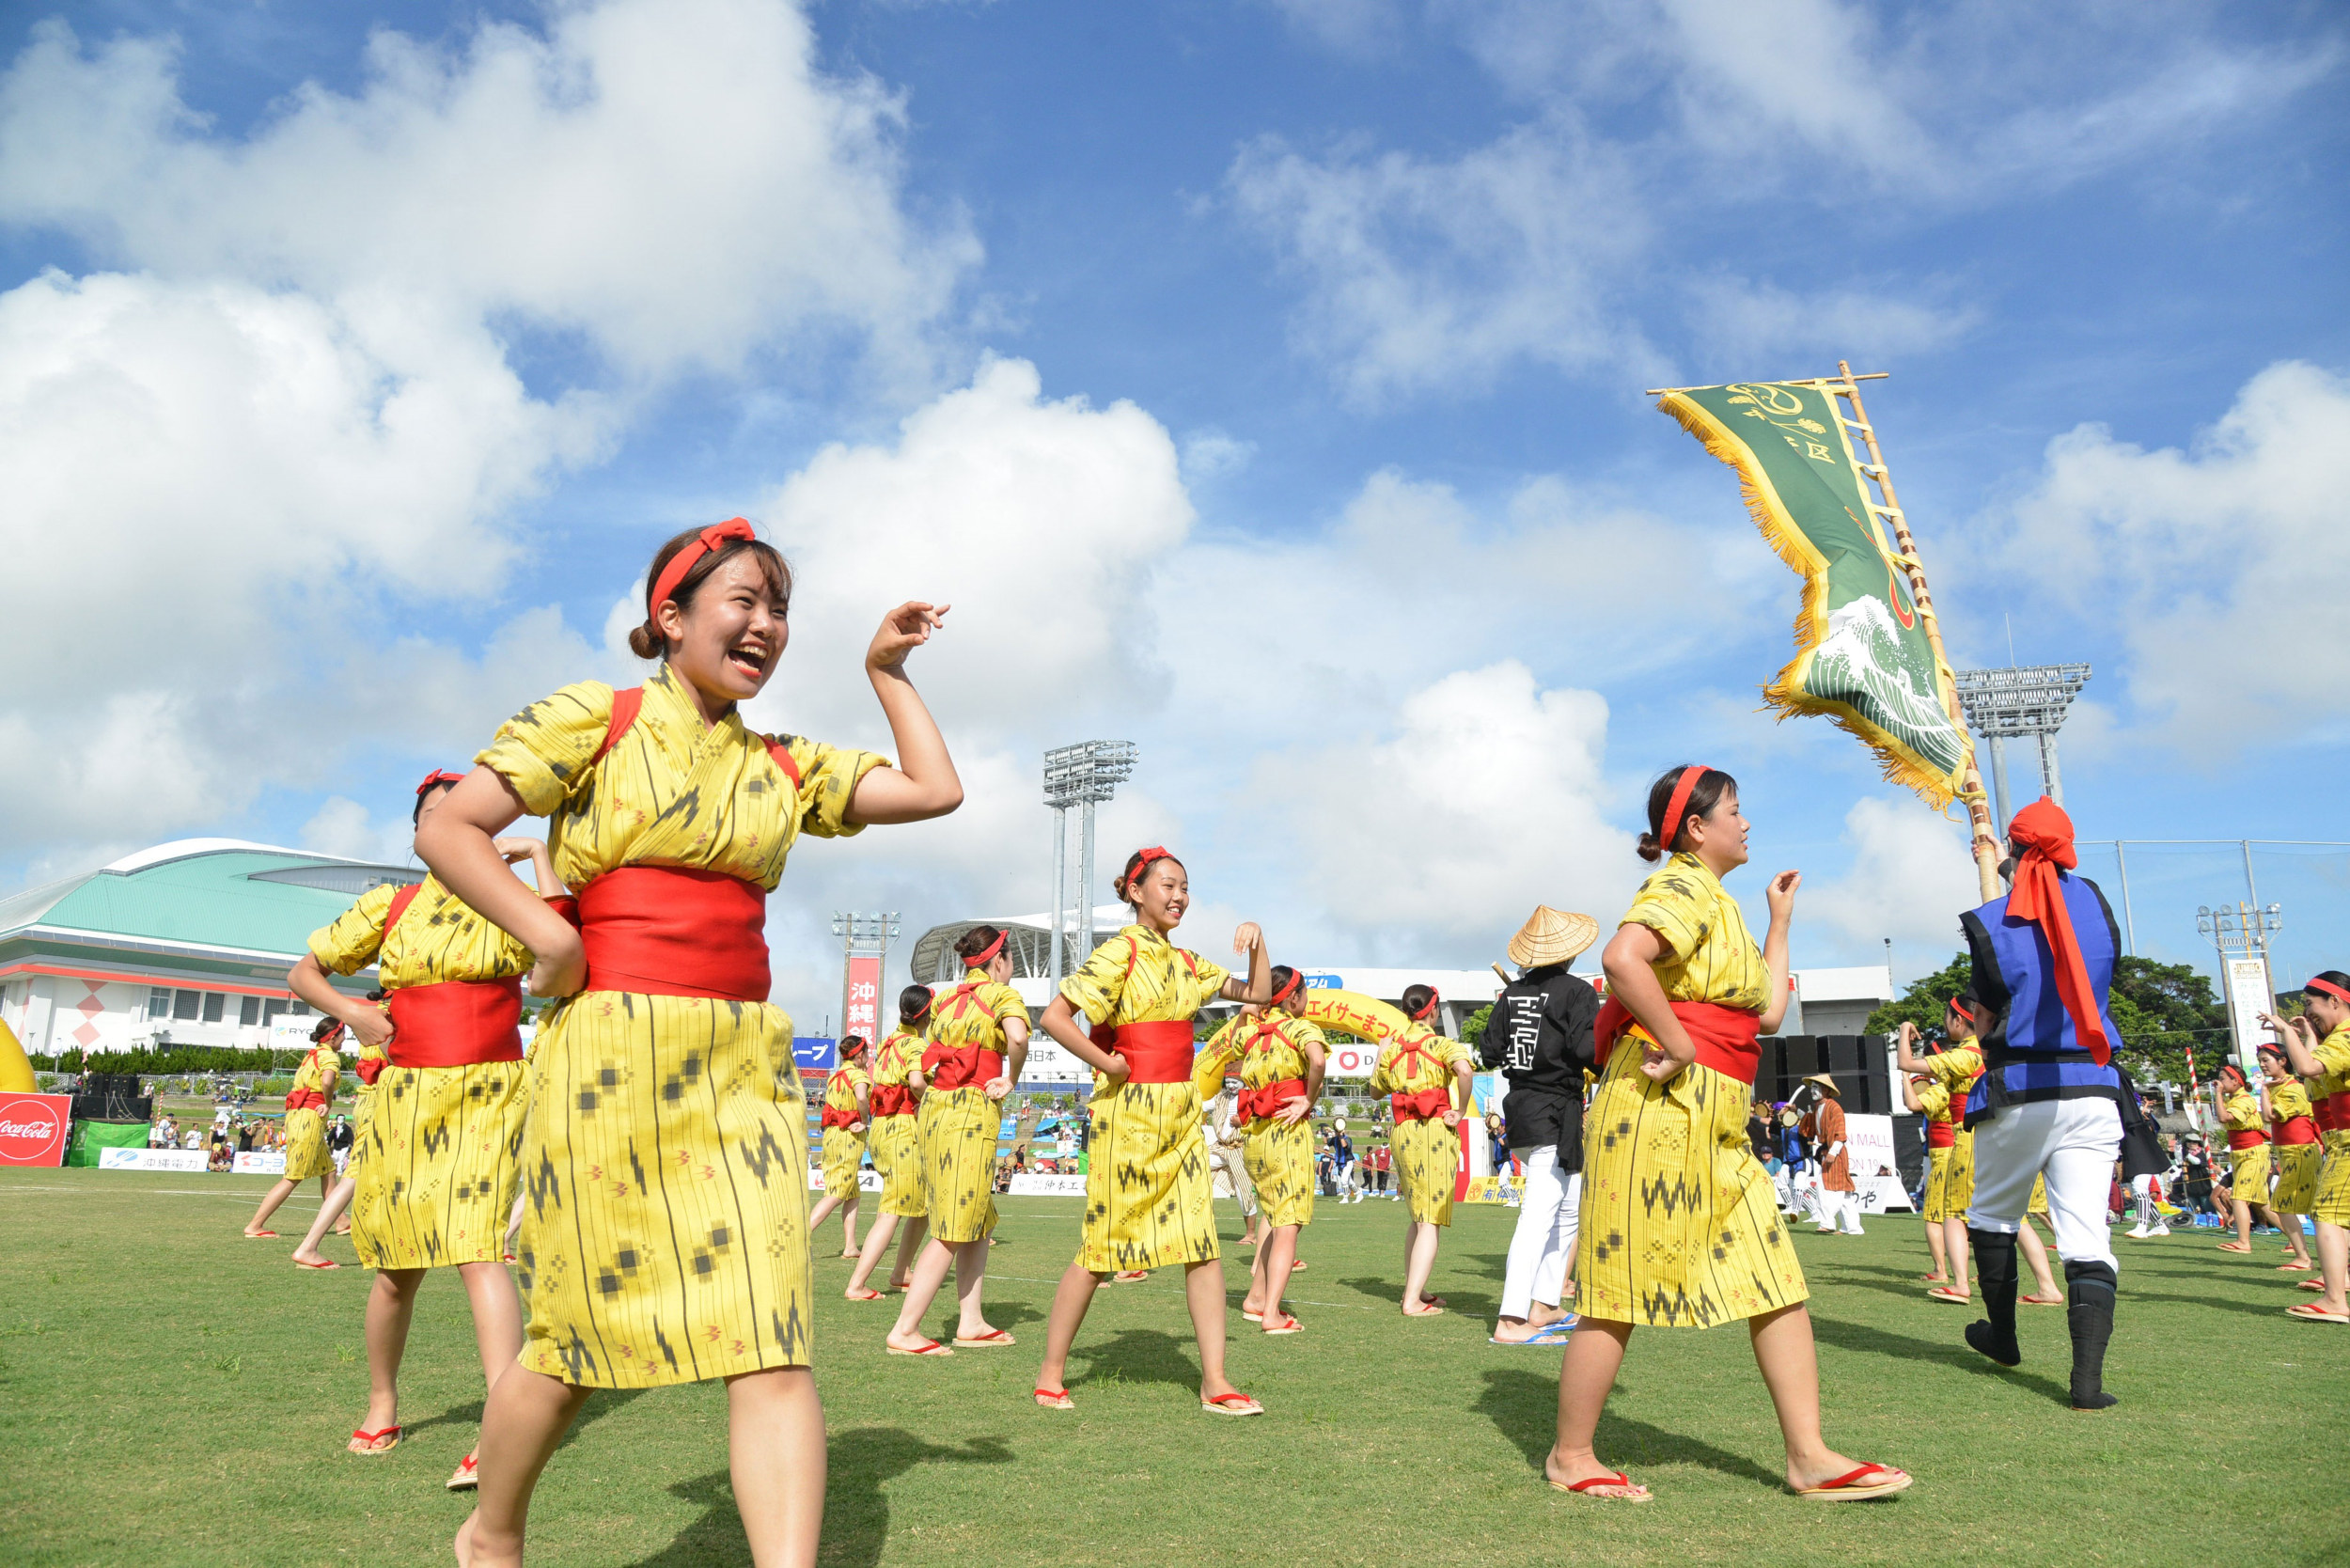 踊りに華を添える「イナグモーイ（女手踊り）。絣の着物にタスキをかけ、島ぞうりを履くのが基本のスタイル  <br>写真：沖縄全島えいさーまつり実行委員会